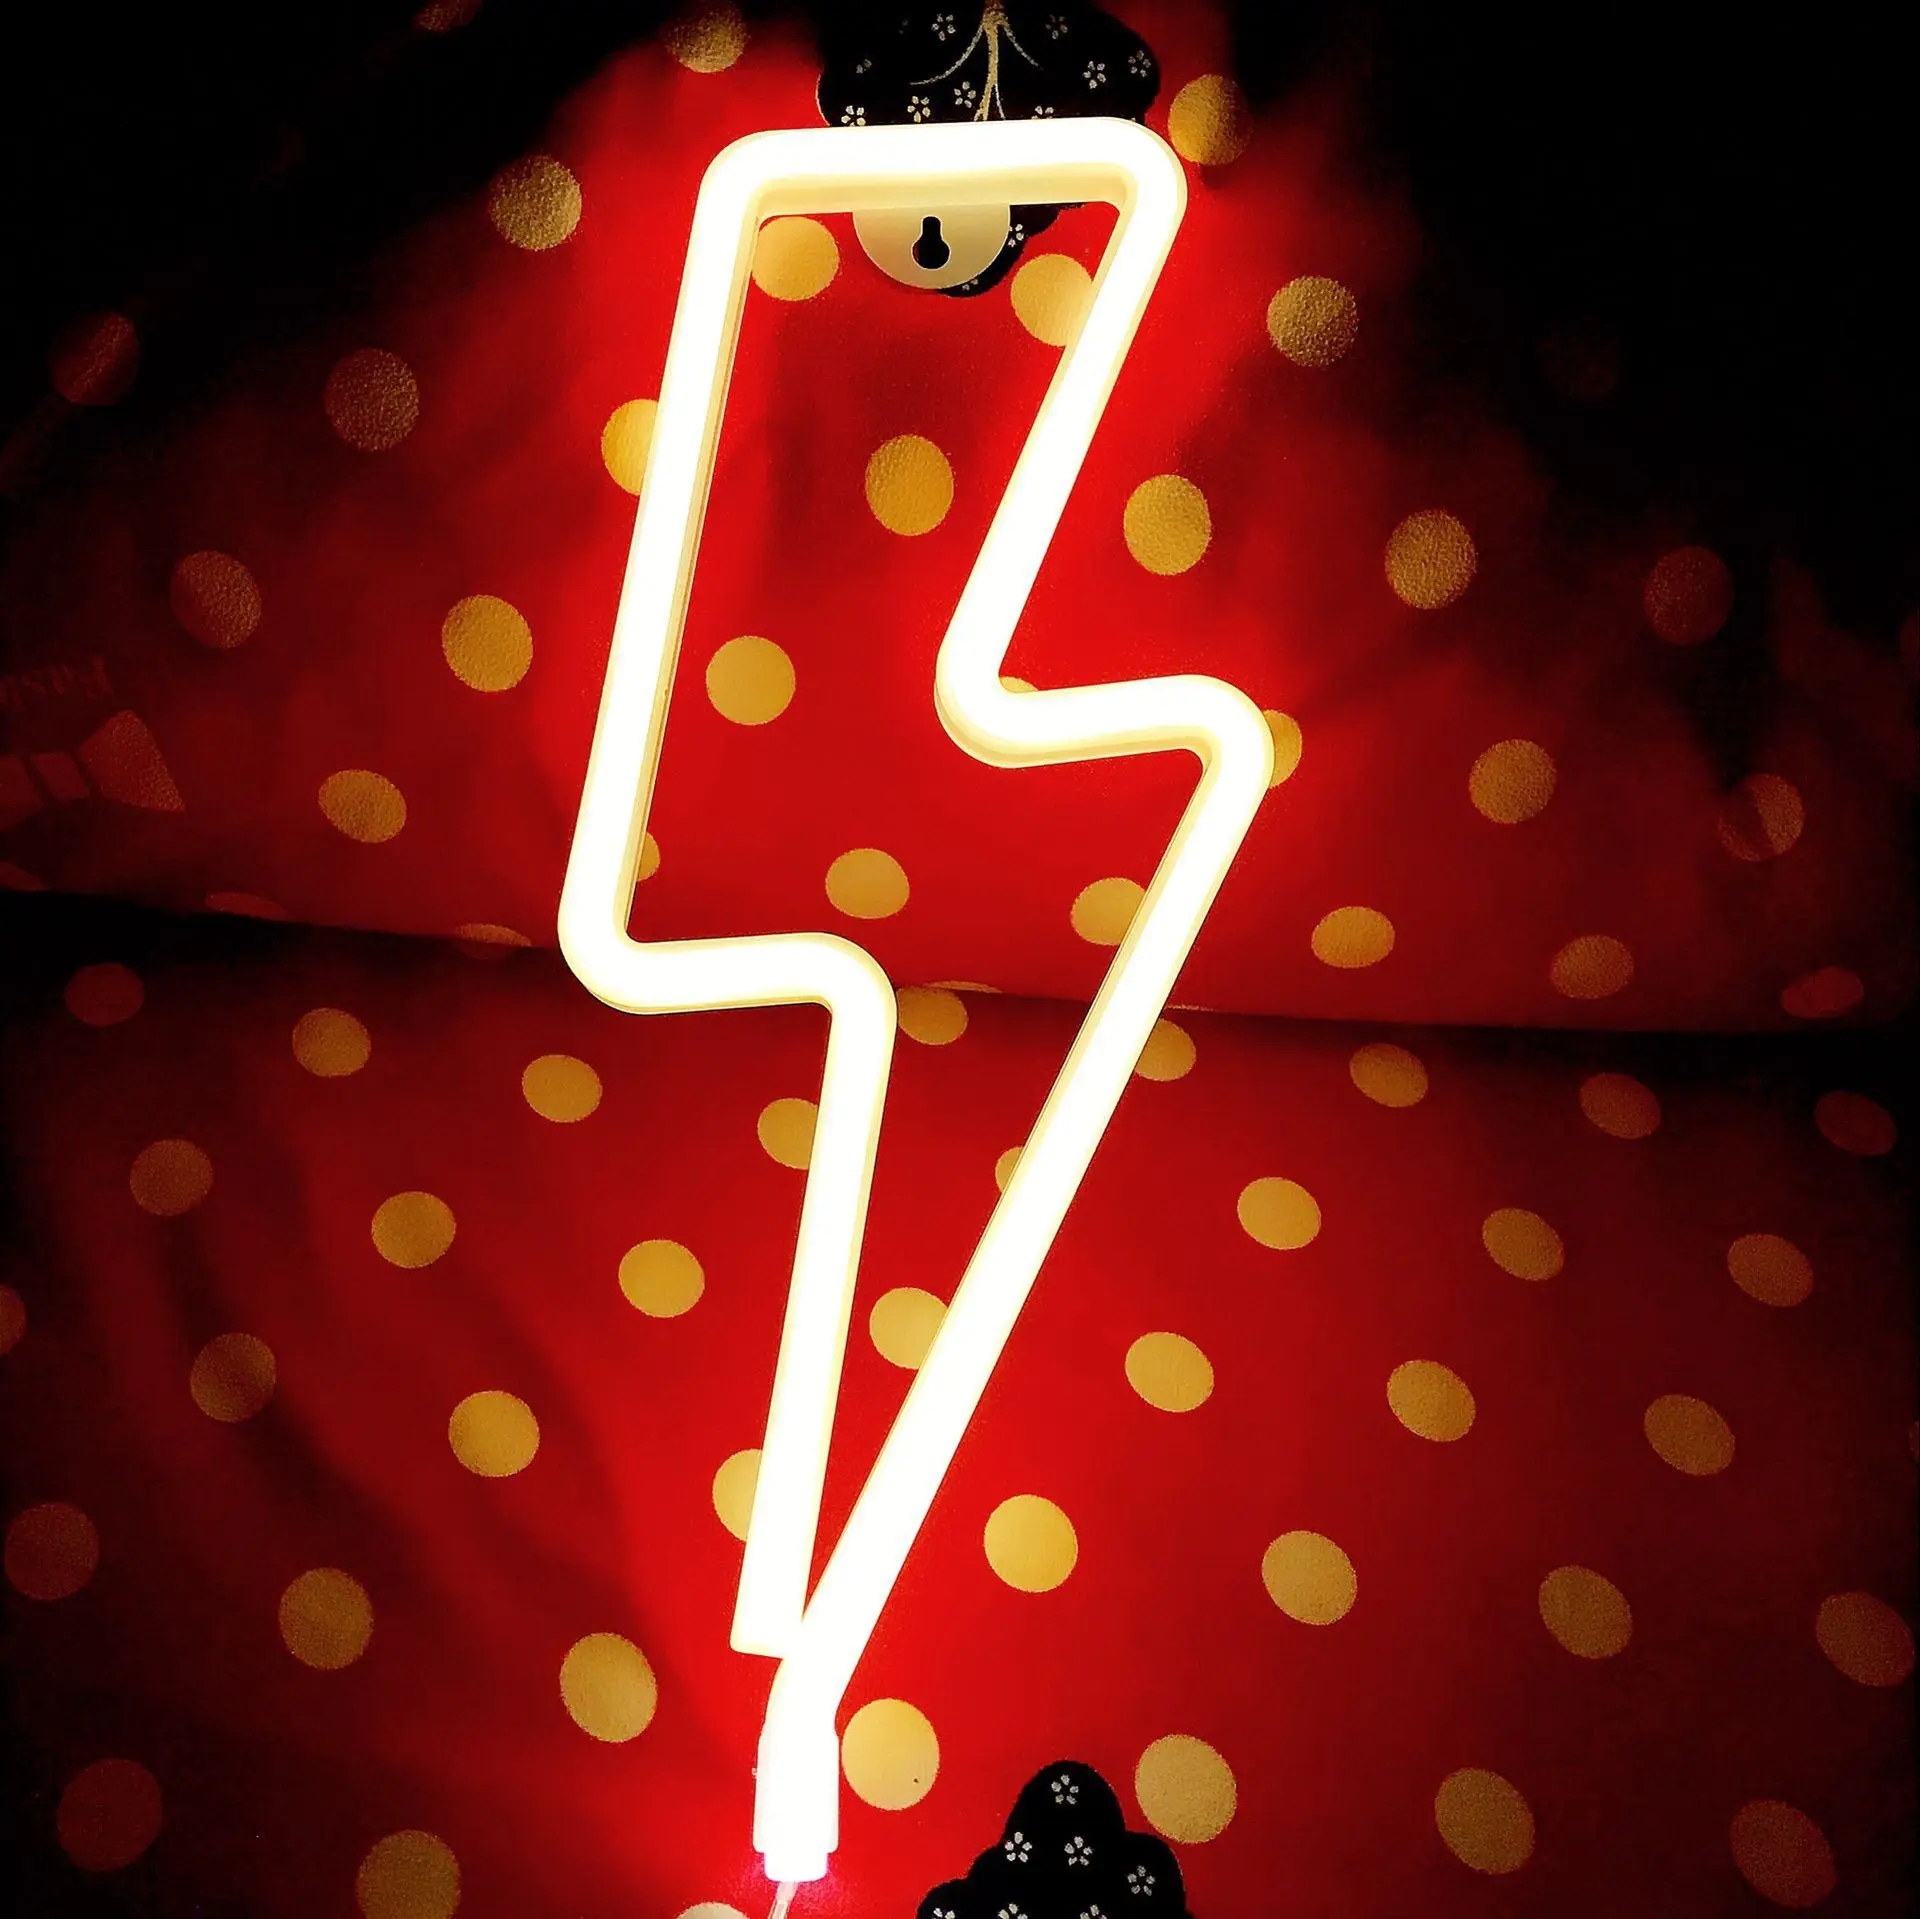 Праздник праздничные поставки общежития украшения комнаты светодиодная неоновая лампа светильник ning моделирование на день рождения предложение фон Творческий светильник